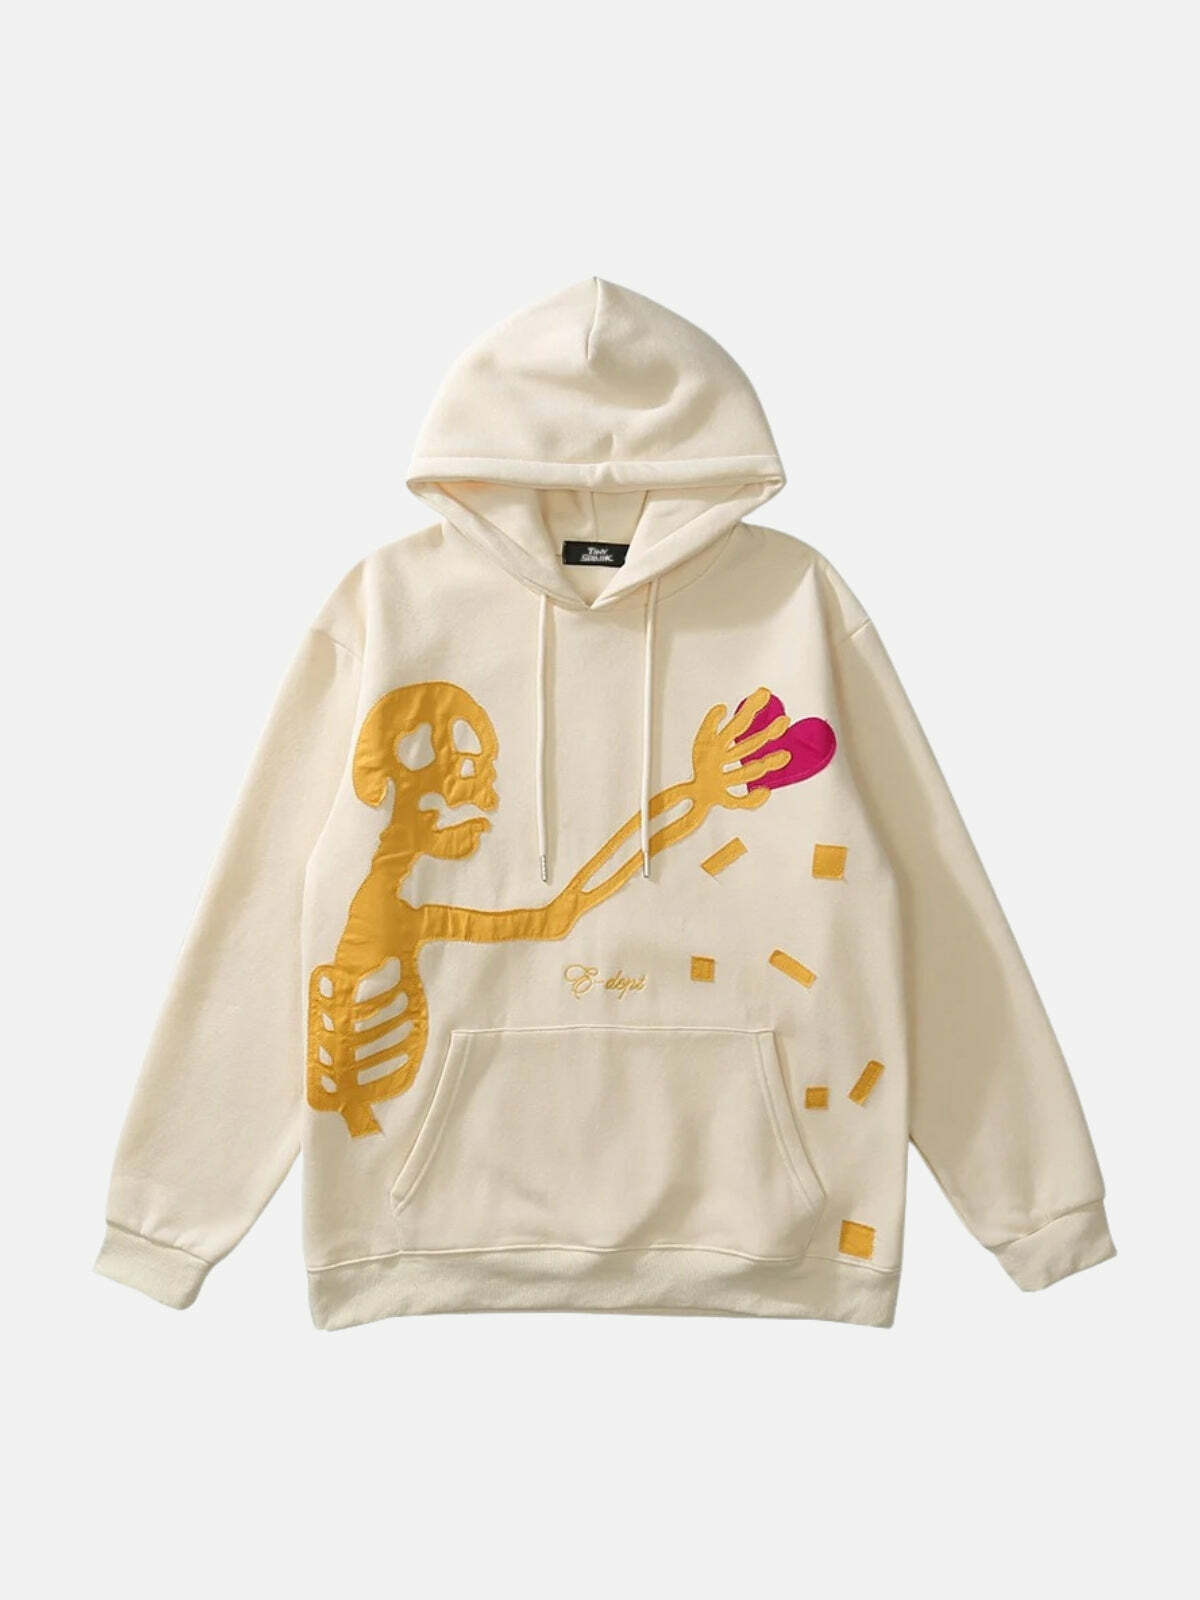 skeleton print hoodie edgy & urban streetwear 4143